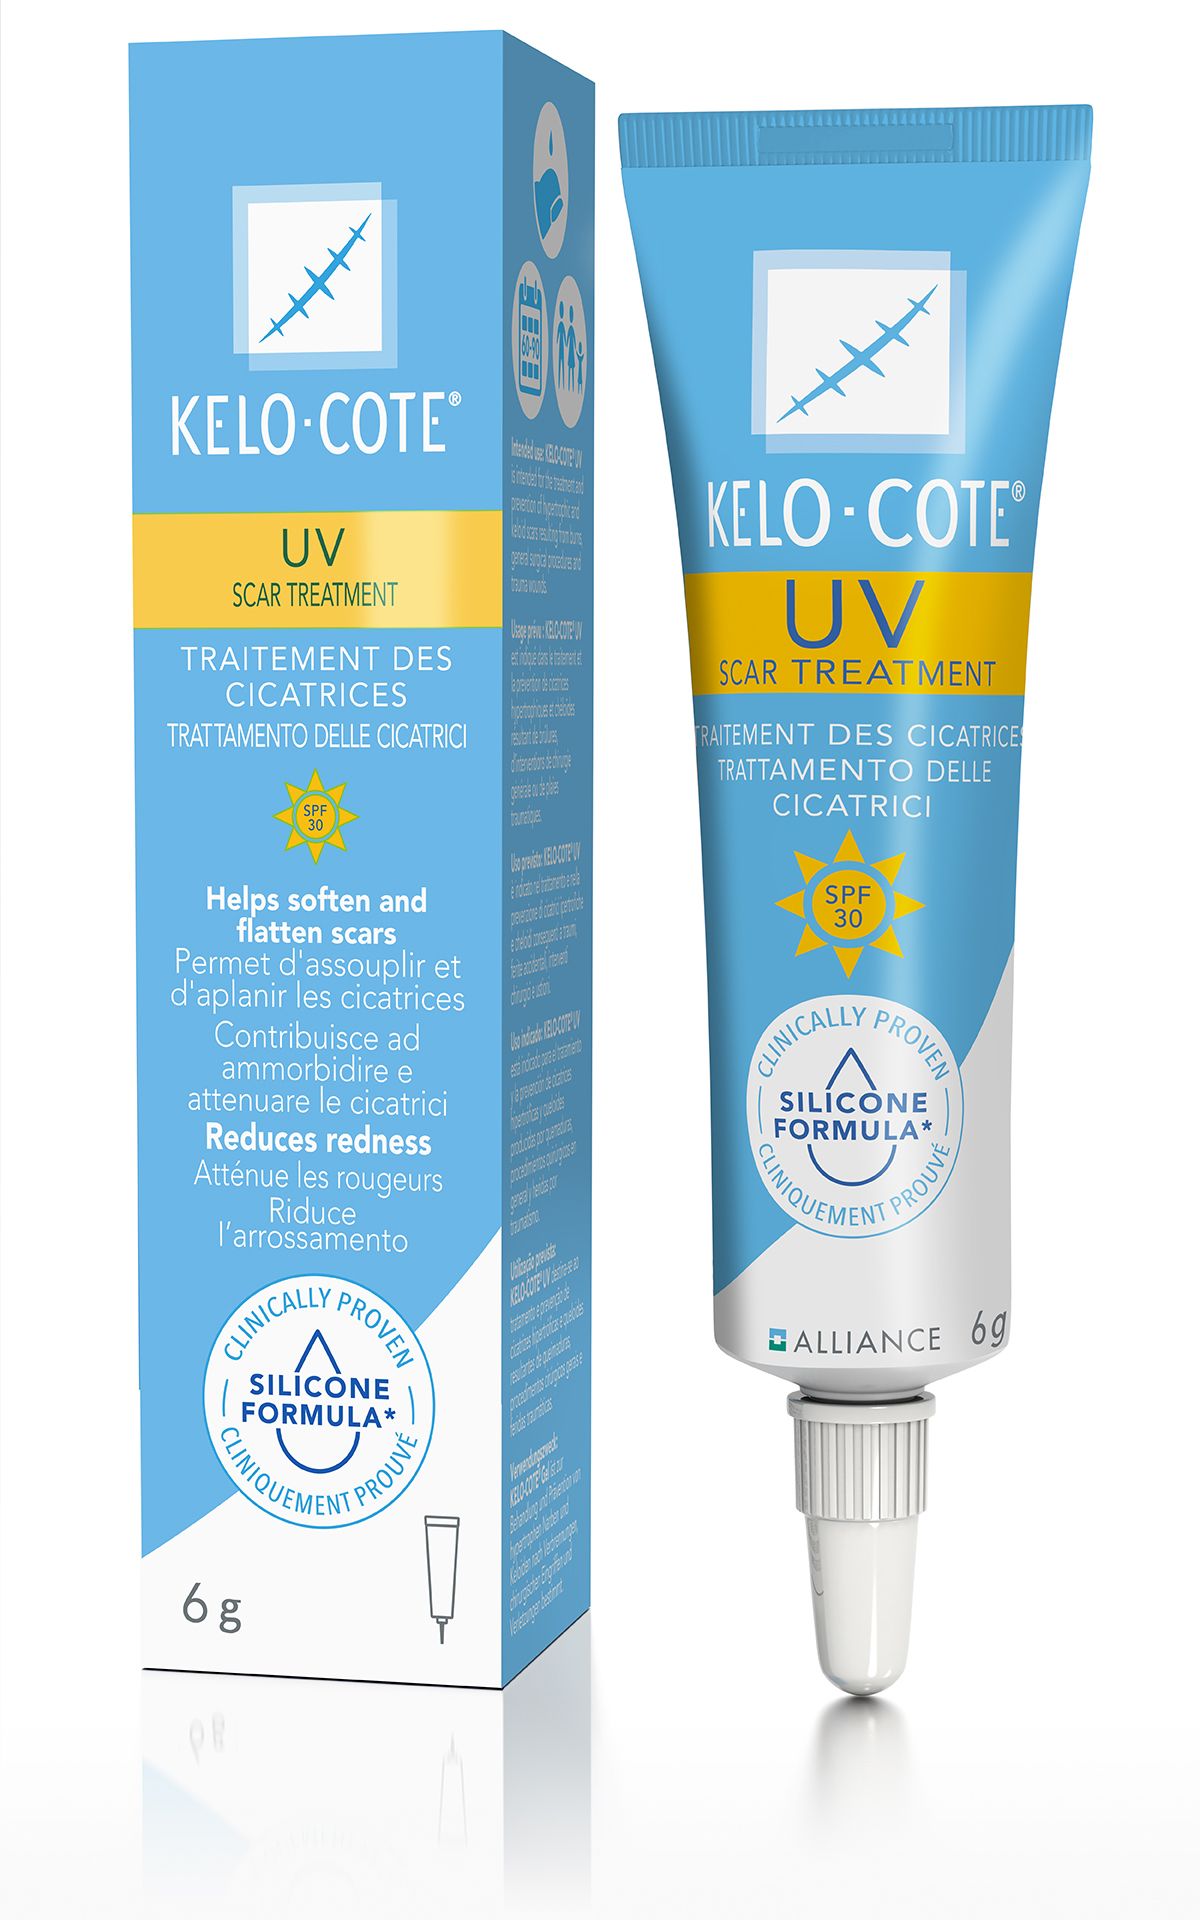 Kelo-cote® UV